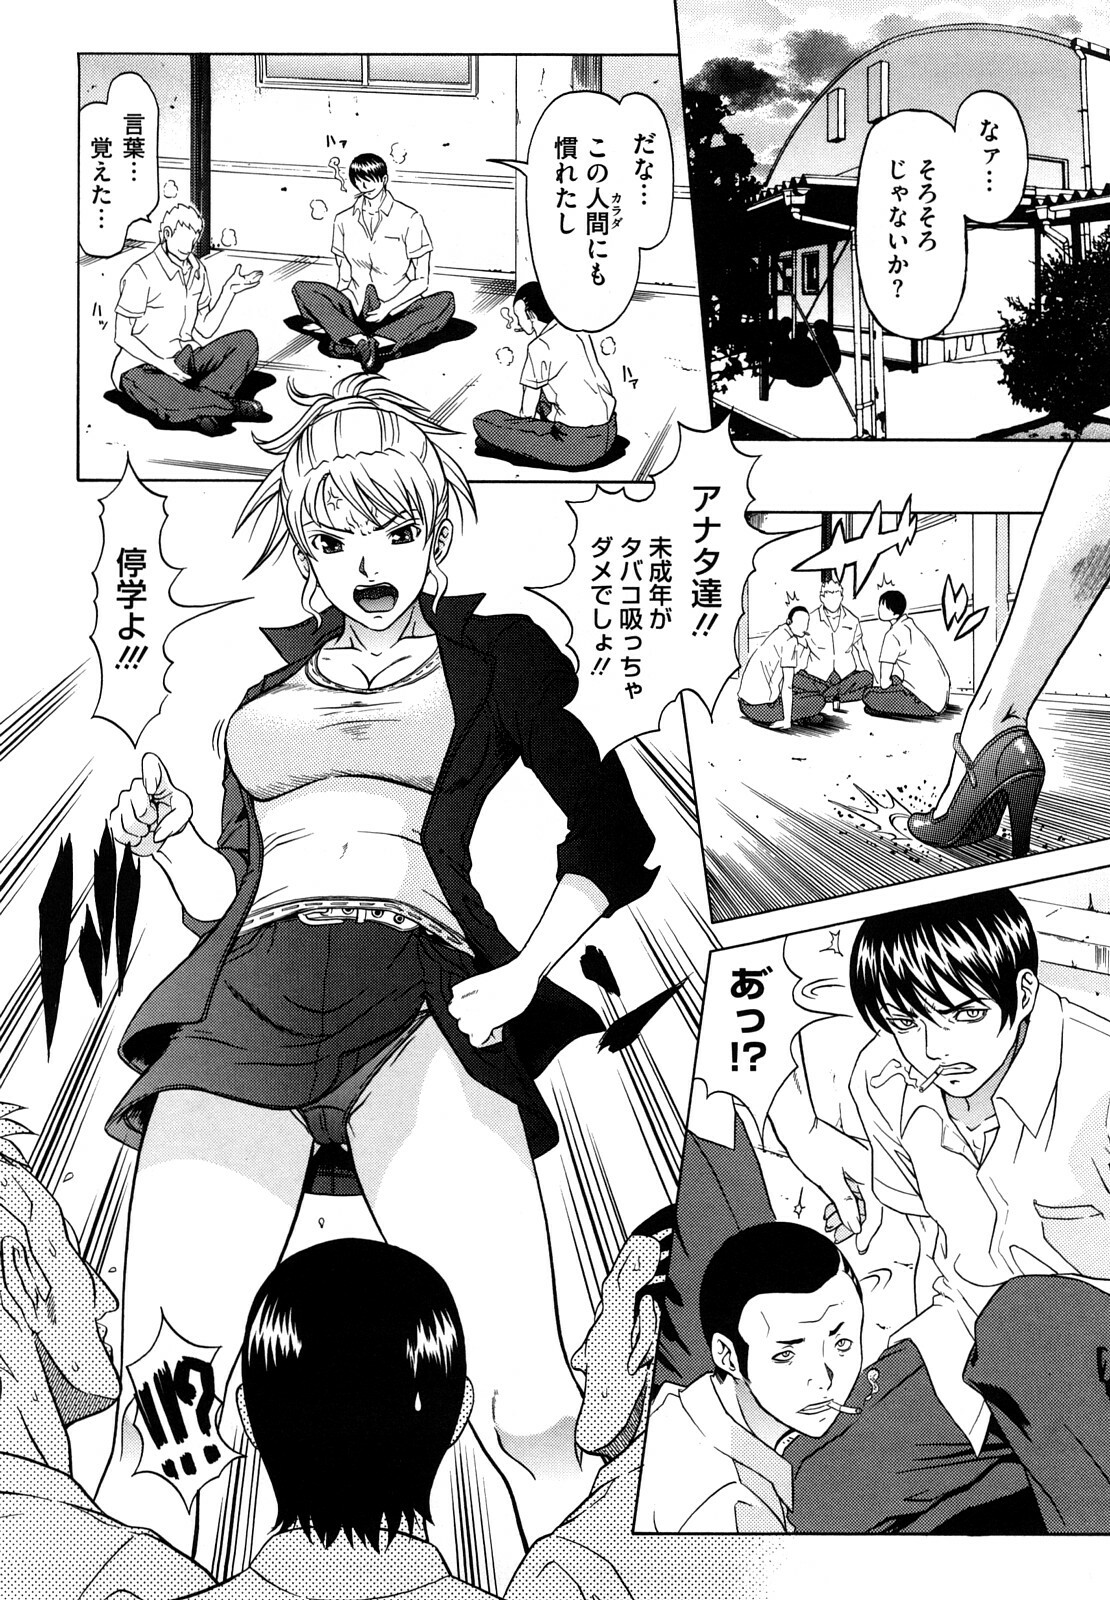 [Kurono Masakado] Nocturnal page 29 full